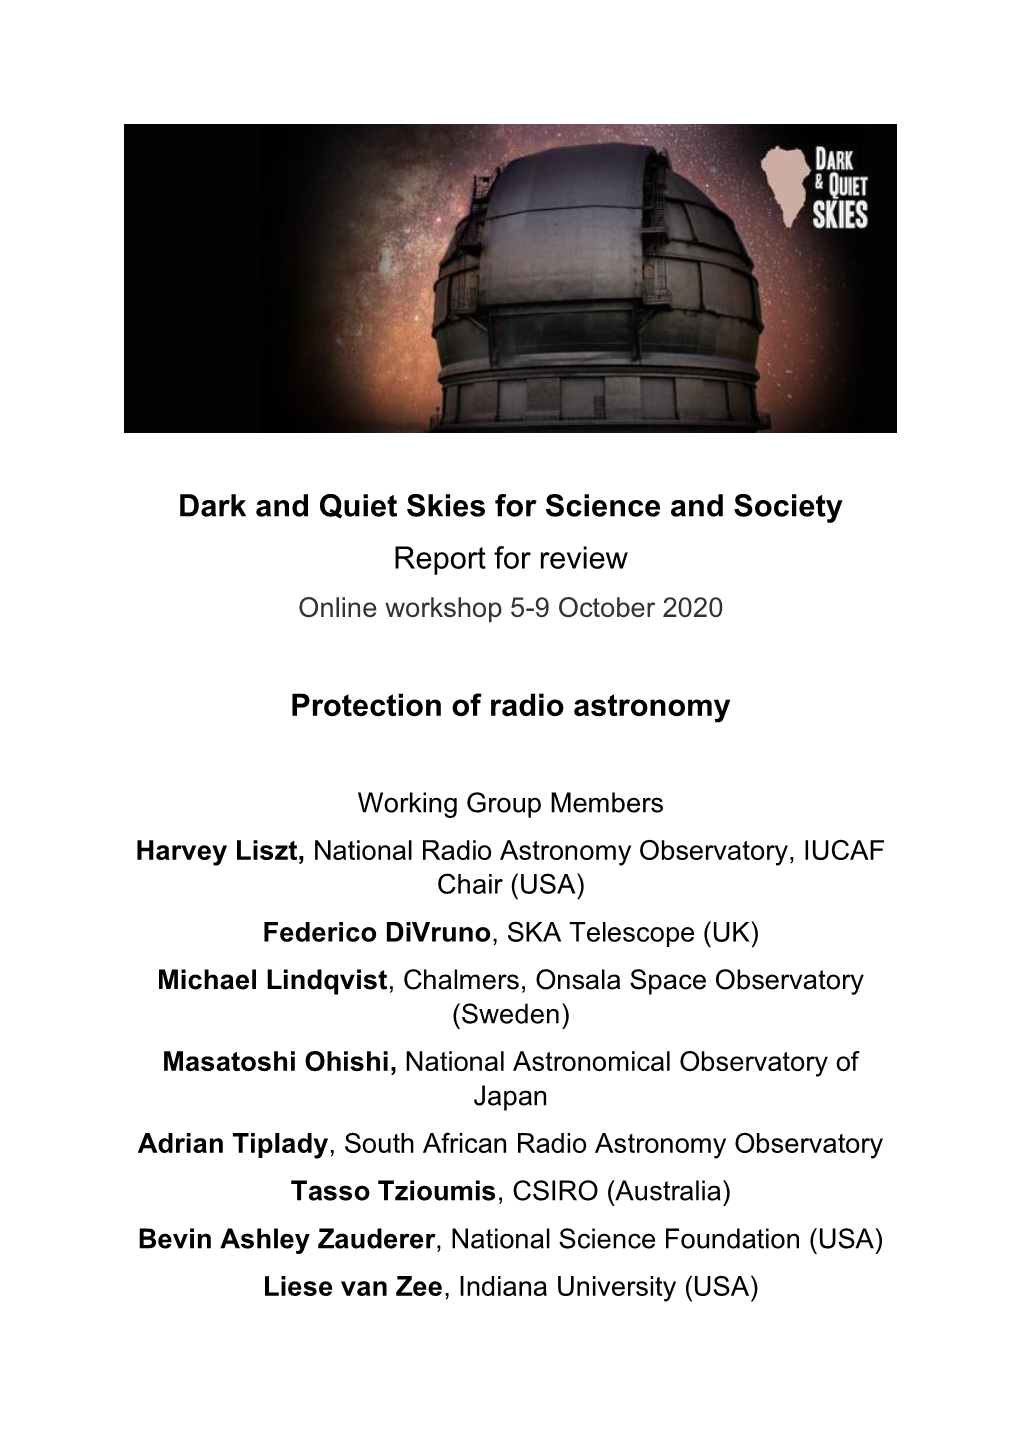 Radio Astronomy